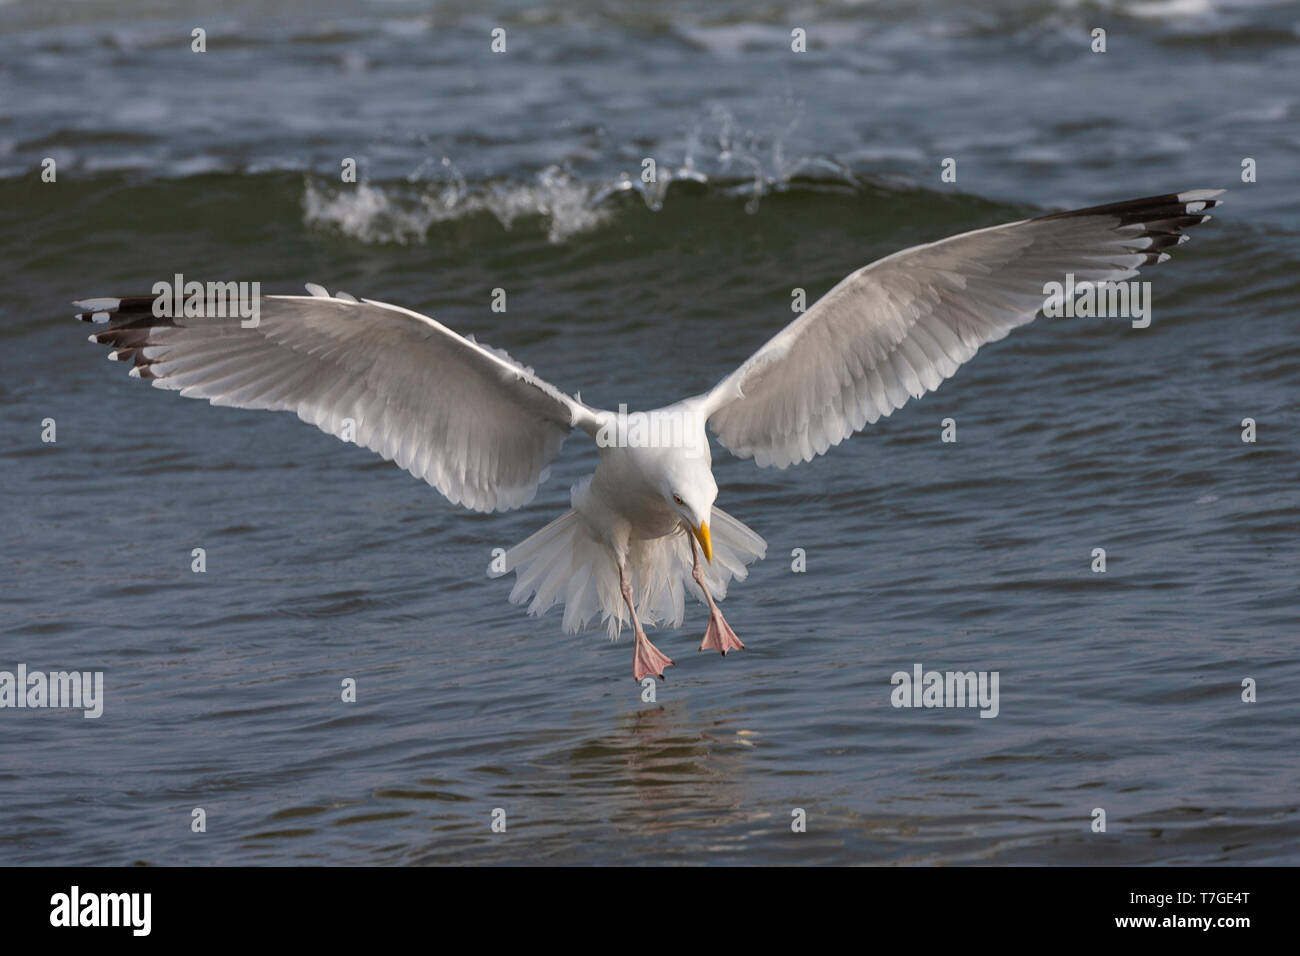 Européens adultes Goéland argenté (Larus argentatus) l'atterrissage dans la mer des Wadden néerlandaise à Vlieland. Avec les ailes écartées. Banque D'Images